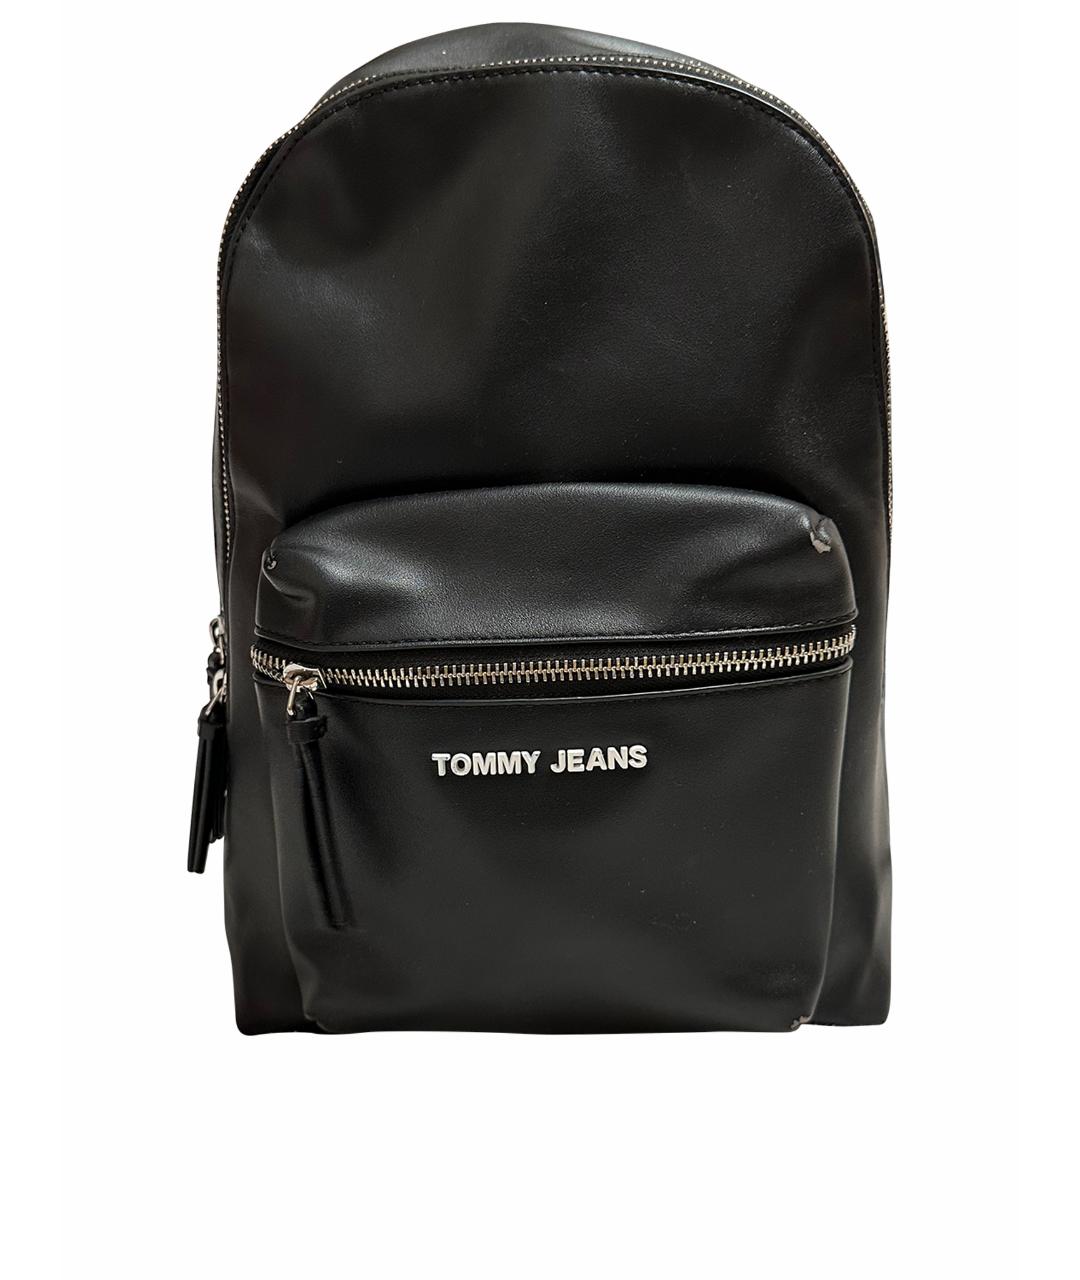 TOMMY HILFIGER Черный рюкзак из искусственной кожи, фото 1